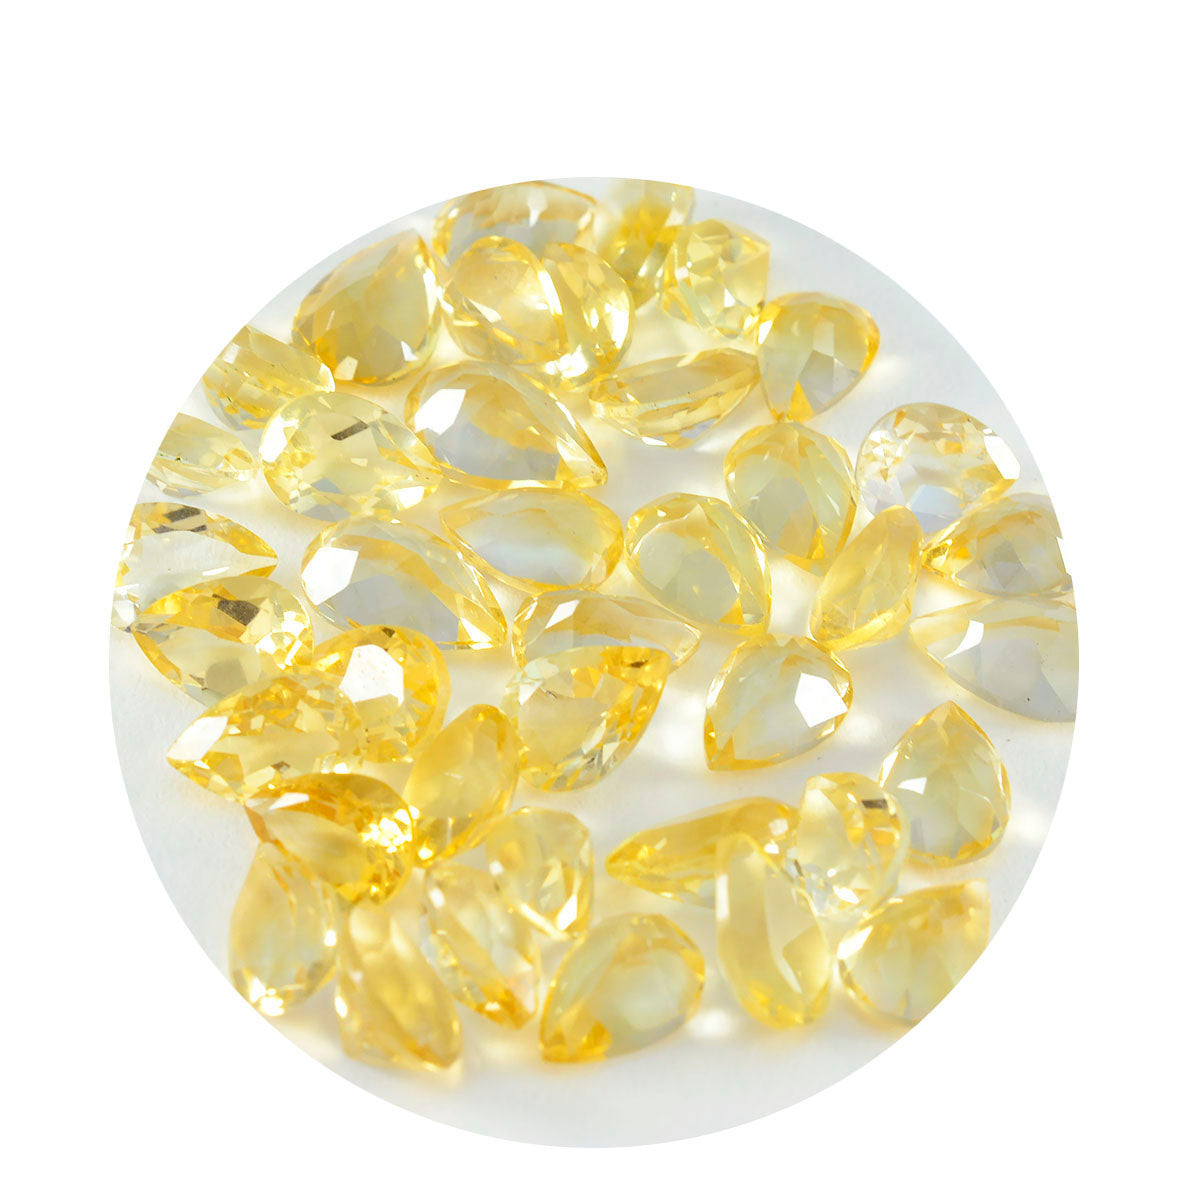 riyogems 1 шт. настоящий желтый цитрин ограненный 5x7 мм грушевидной формы красивый качественный свободный драгоценный камень